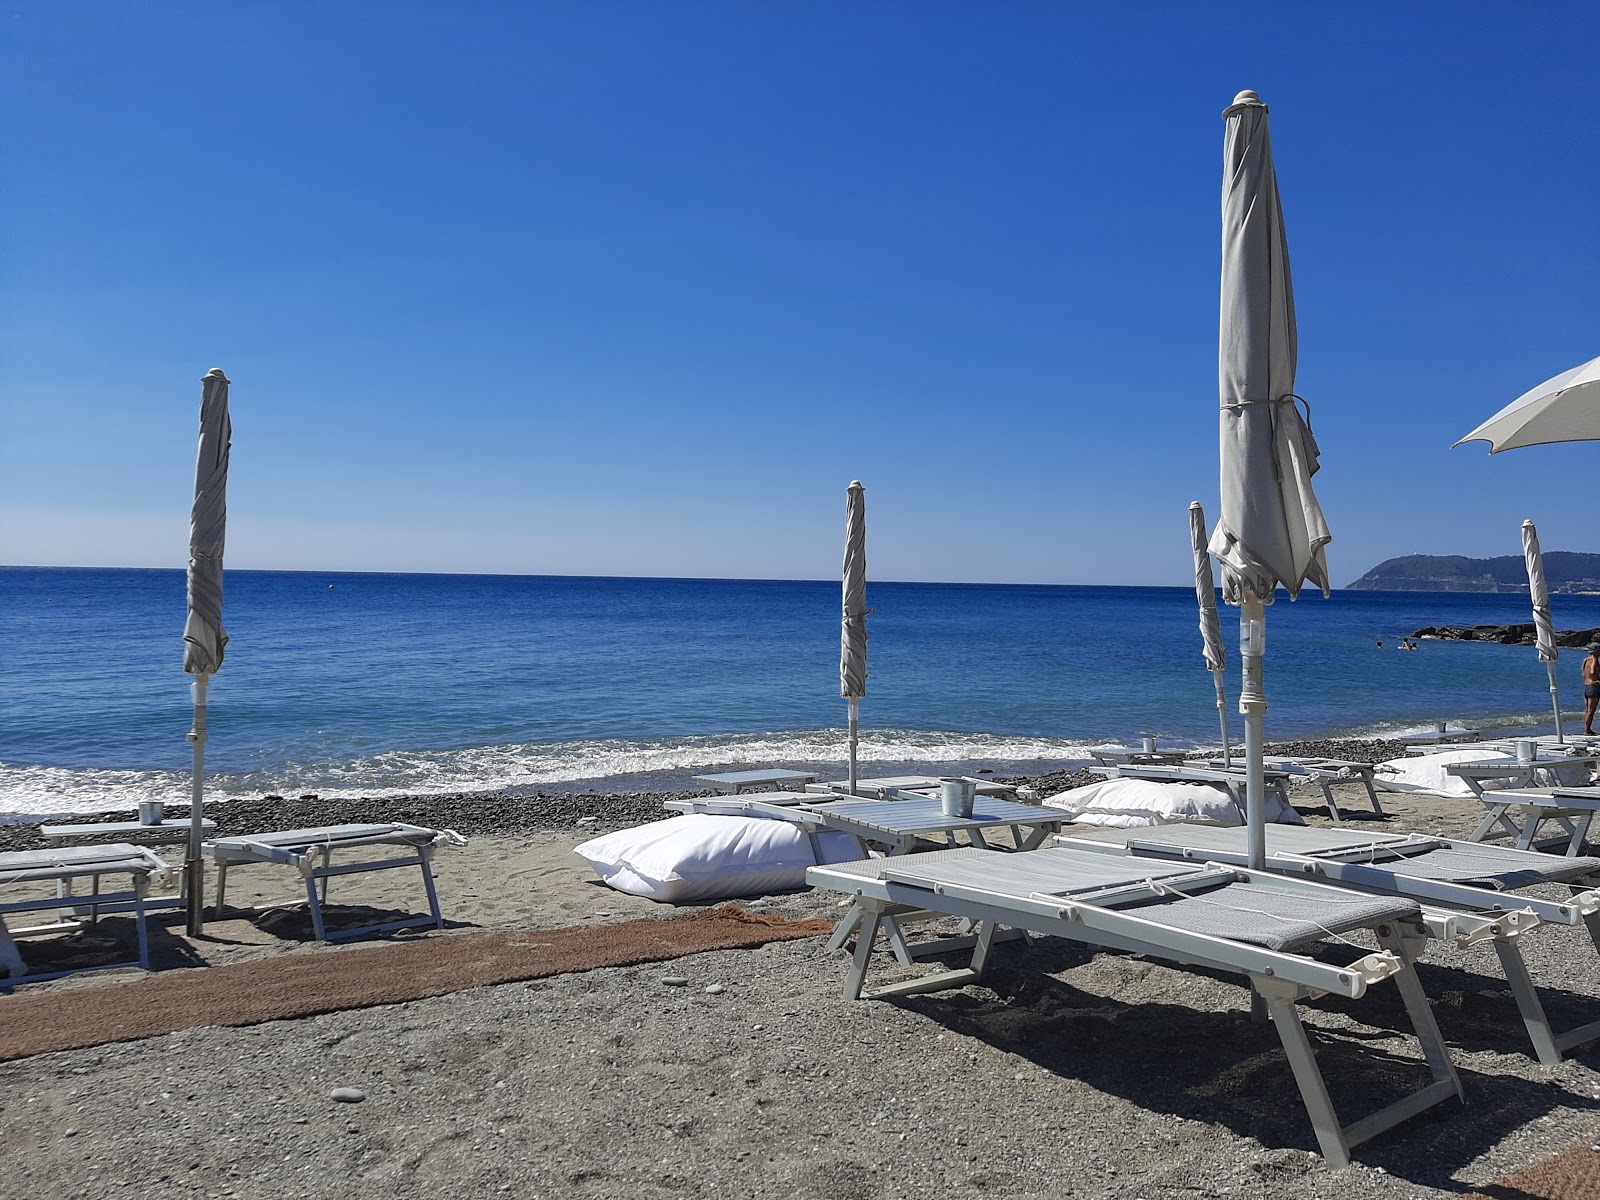 Foto de Spiaggia libera Alassio - lugar popular entre los conocedores del relax